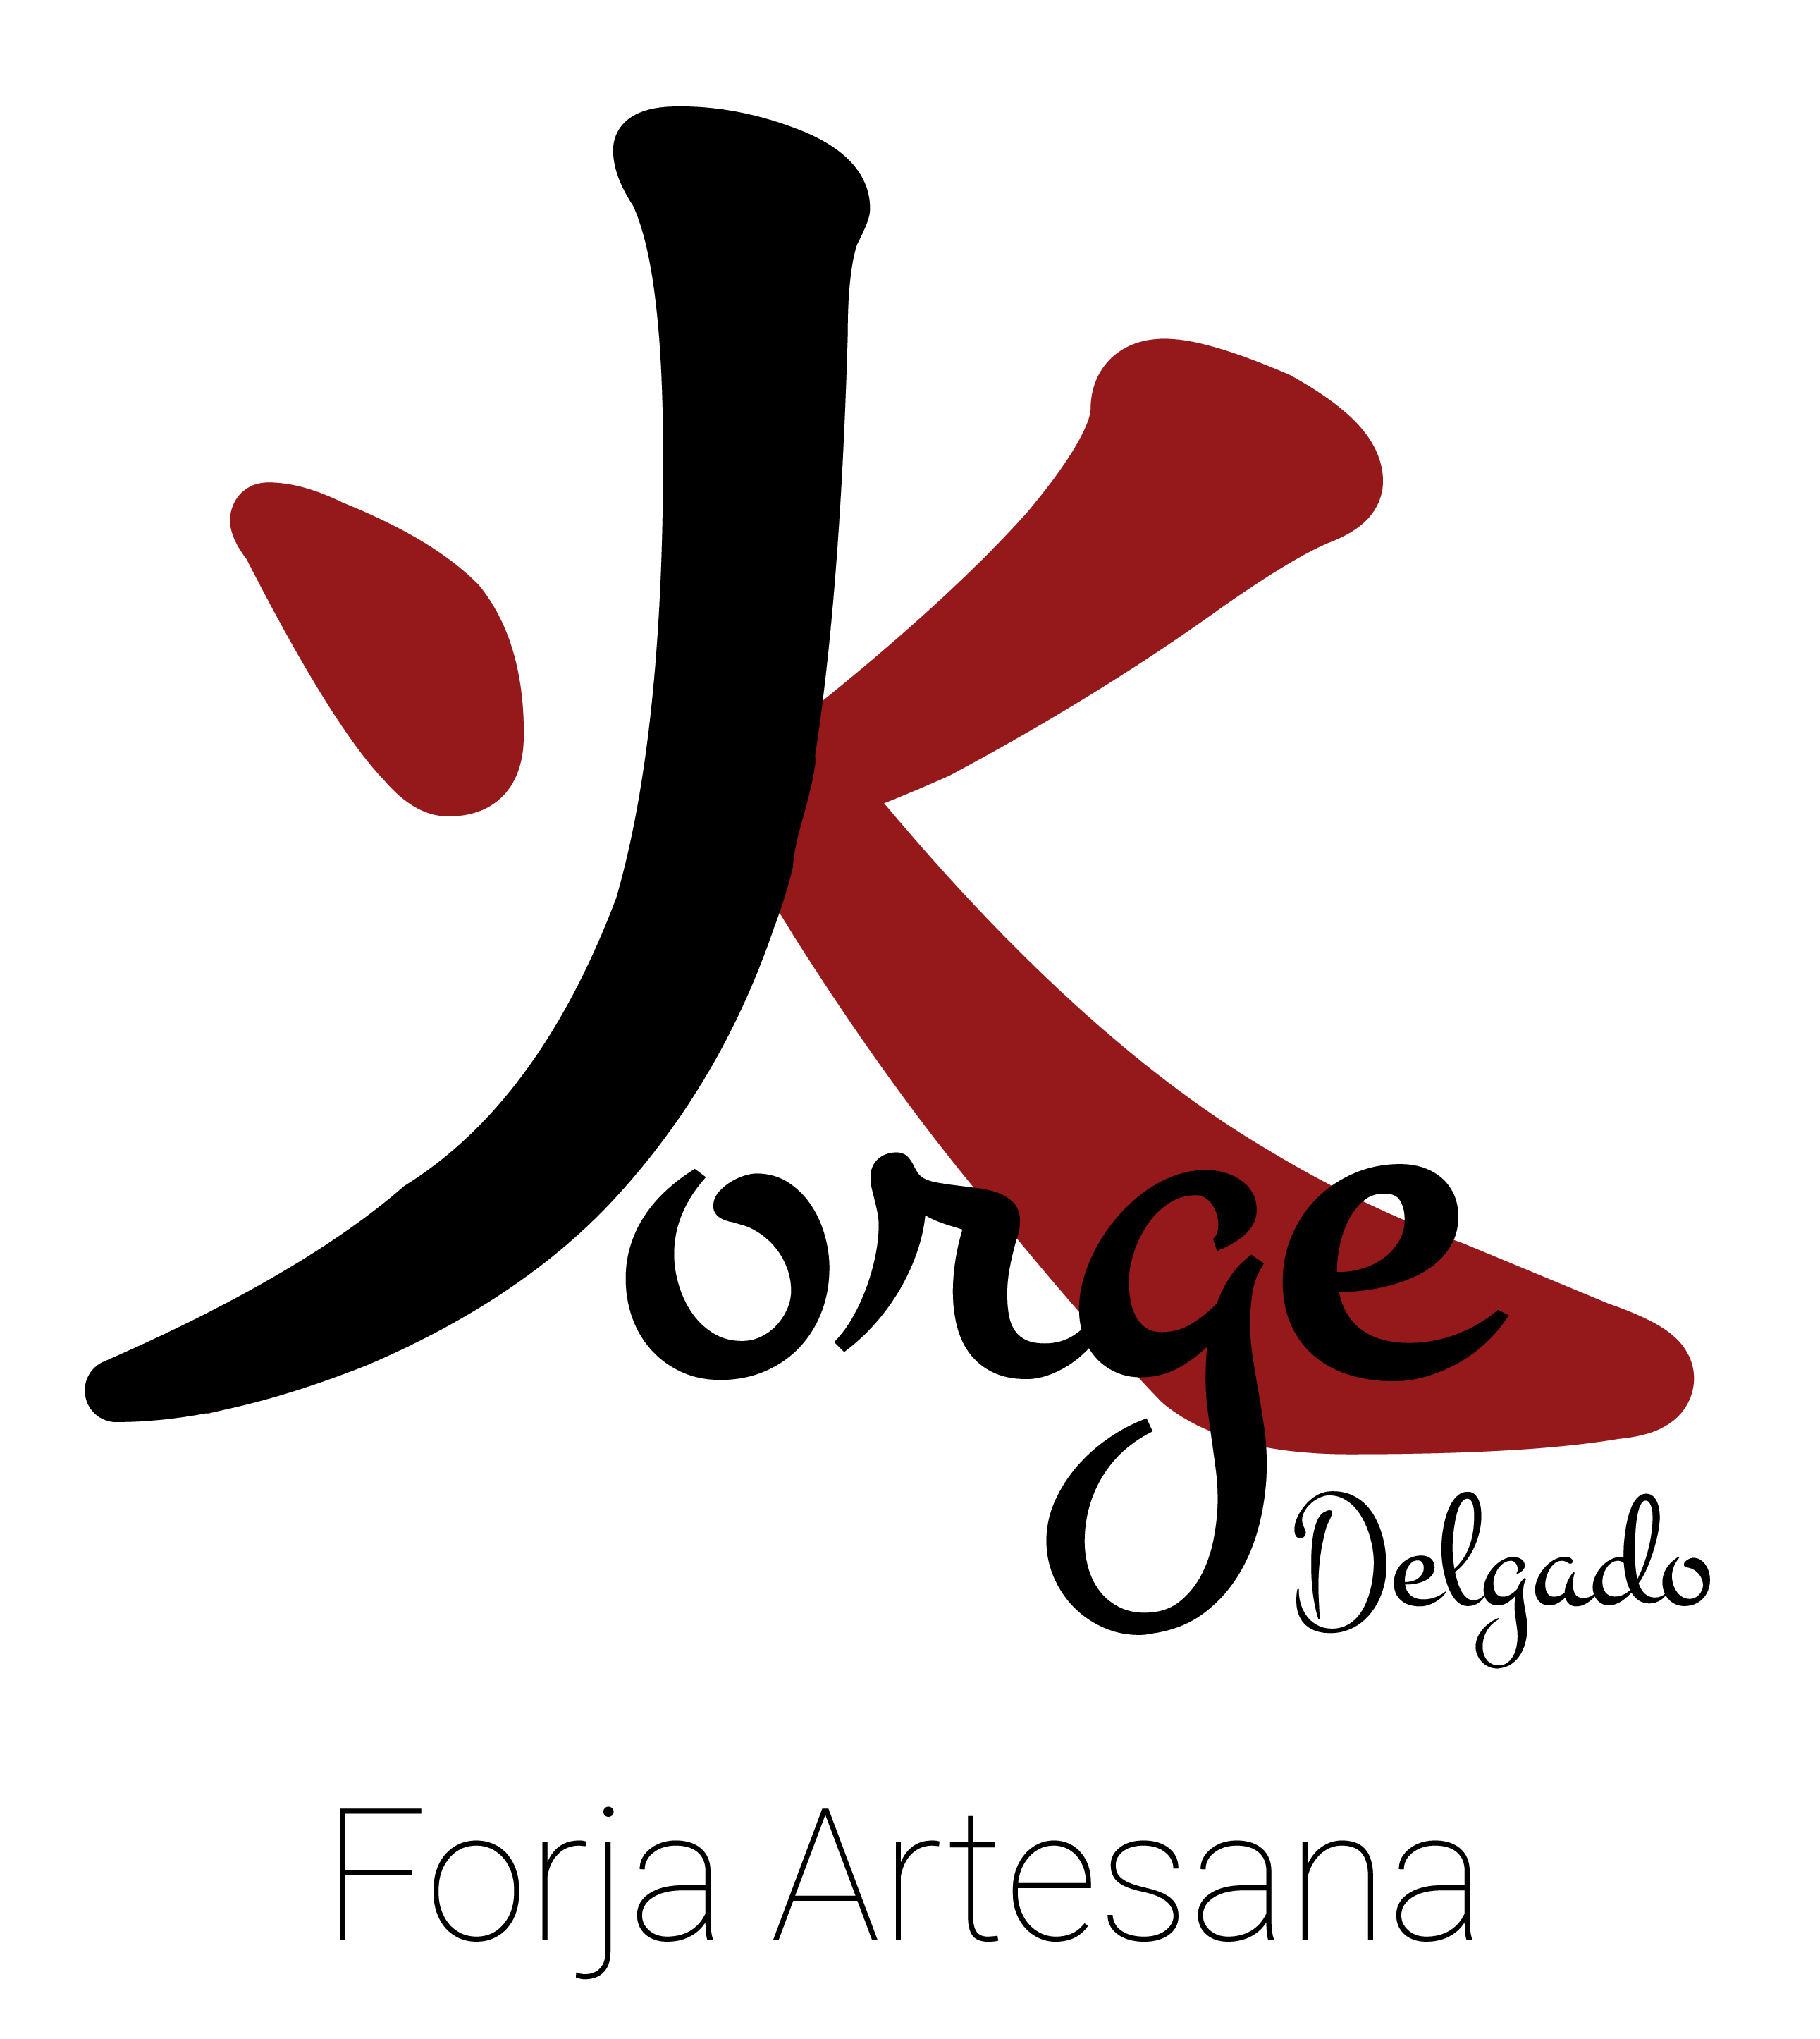 Logotipo Jorge Delgado Forja